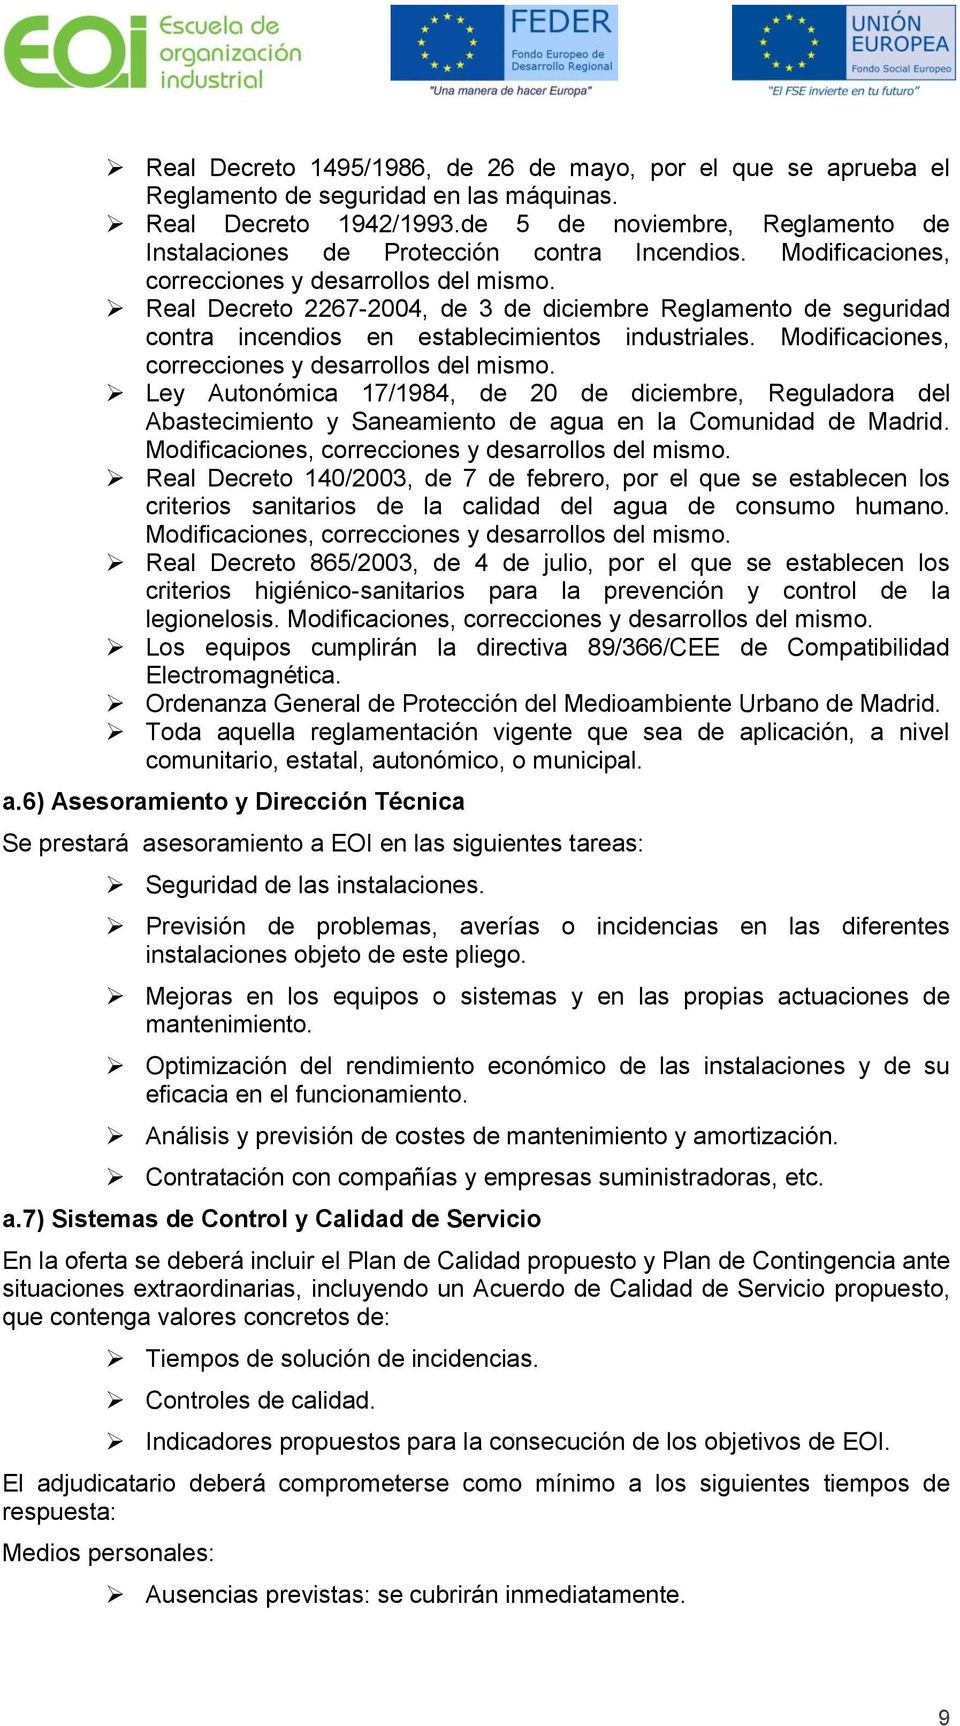 Mdificacines, crreccines y desarrlls del mism. Ley Autnómica 17/1984, de 20 de diciembre, Reguladra del Abastecimient y Saneamient de agua en la Cmunidad de Madrid.